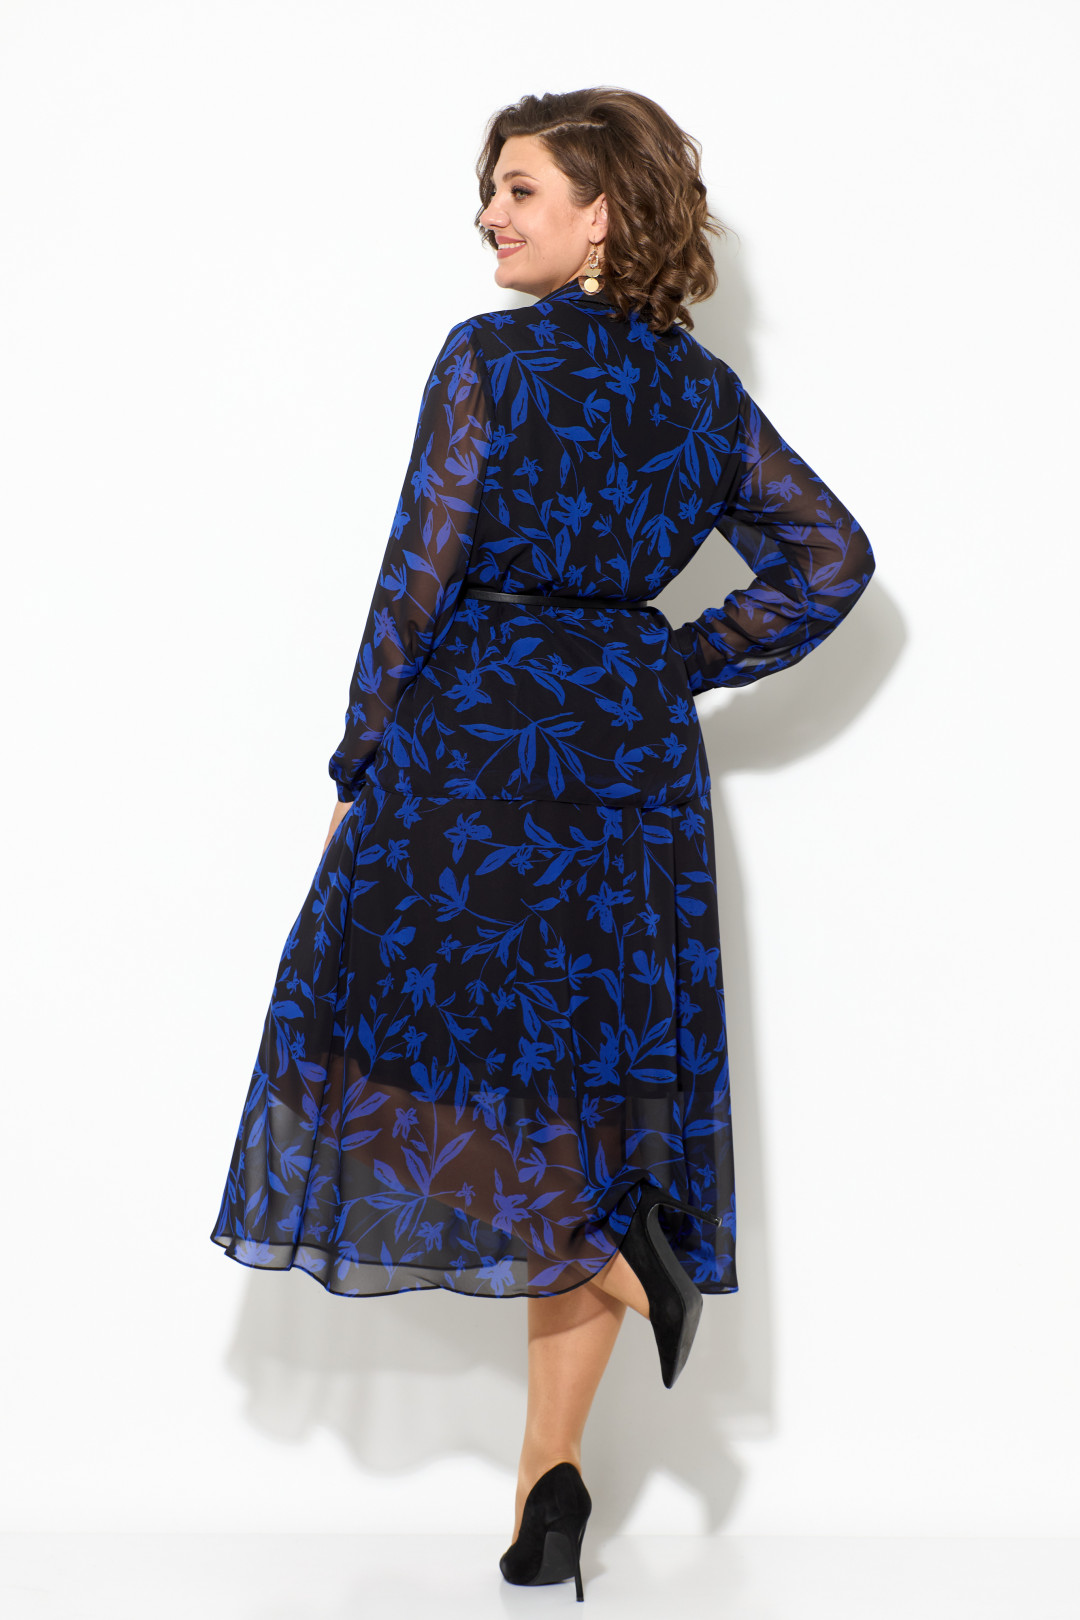 Платье Кокетка и К 1070 синий+черный